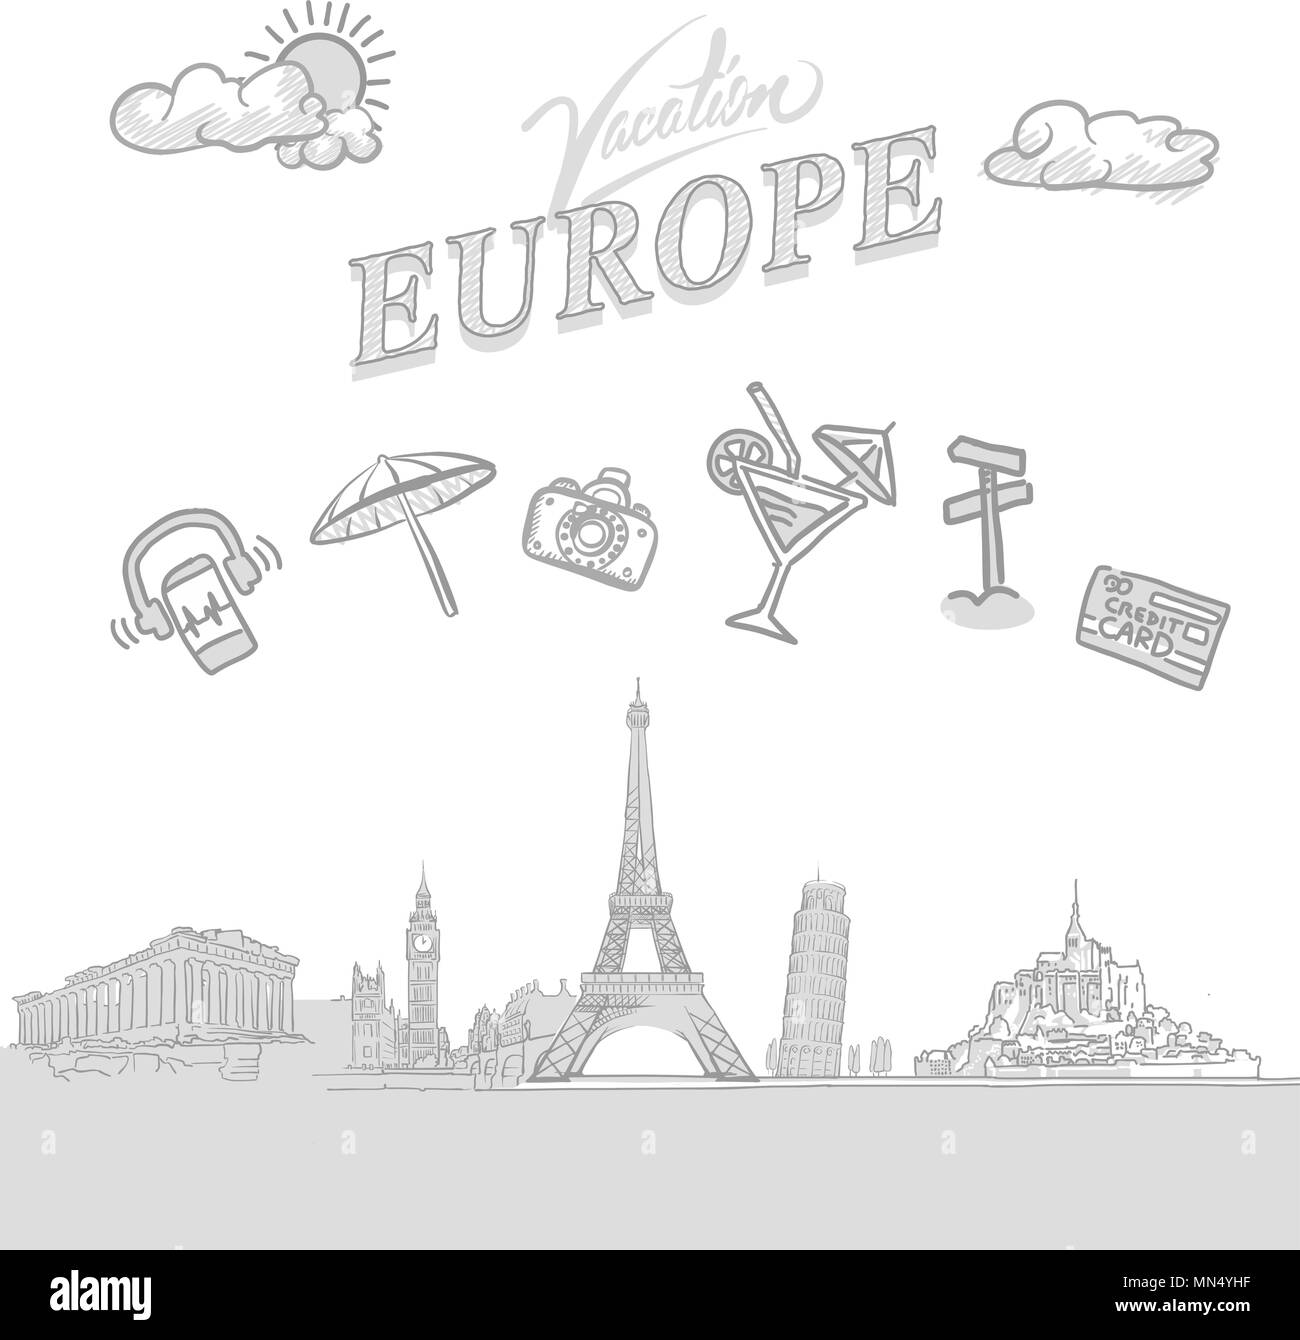 Europa reisen Marketing abdecken, von Hand erstellt einen Vektor Skizzen Stock Vektor